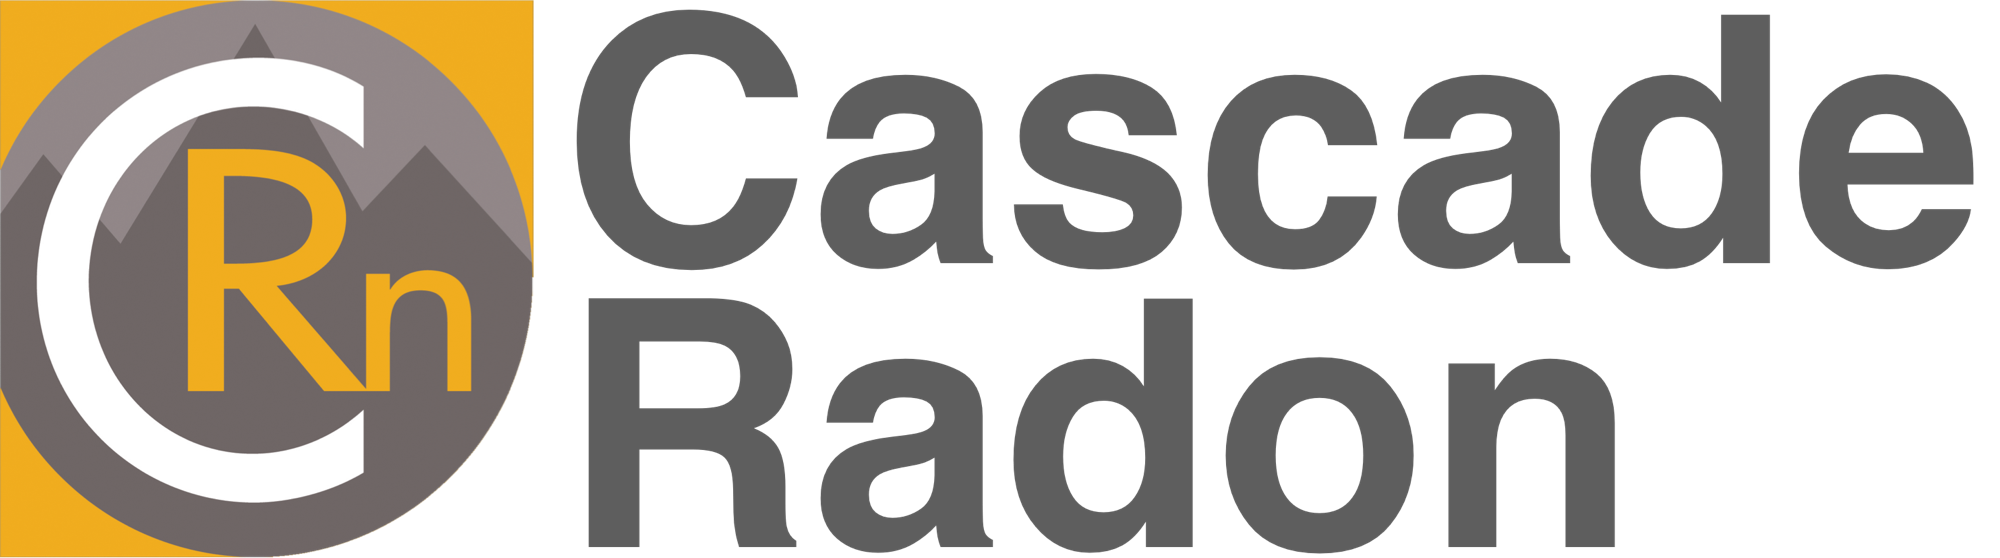 Cascade Radon logo